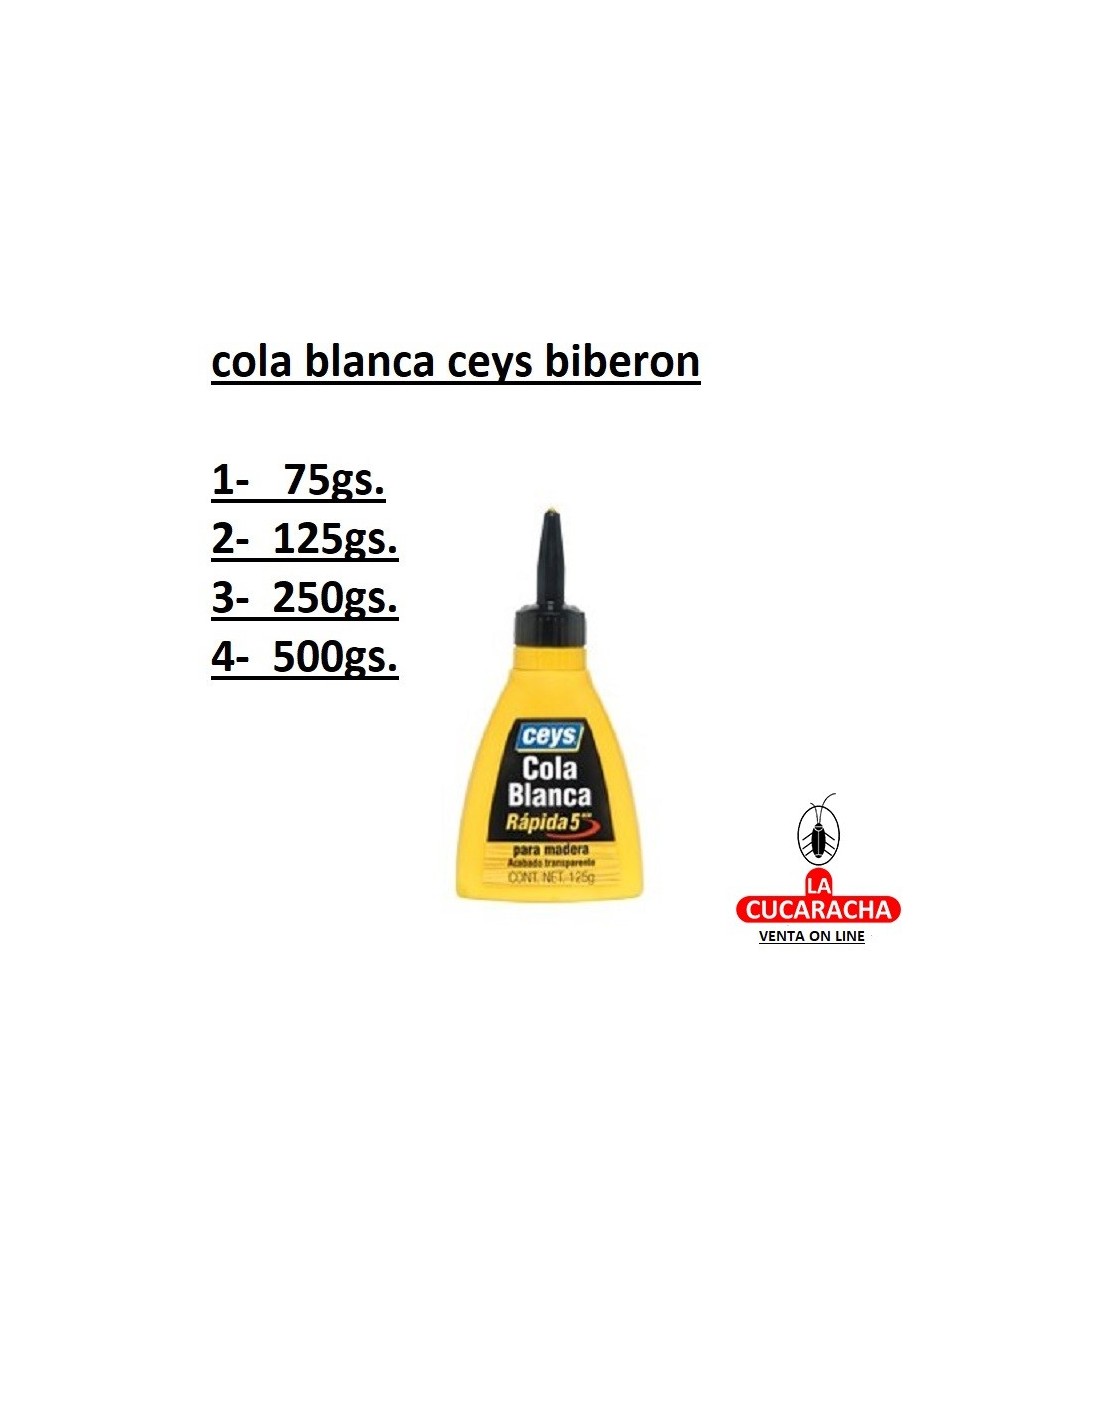 Cola Blanca Rápida - Ceys